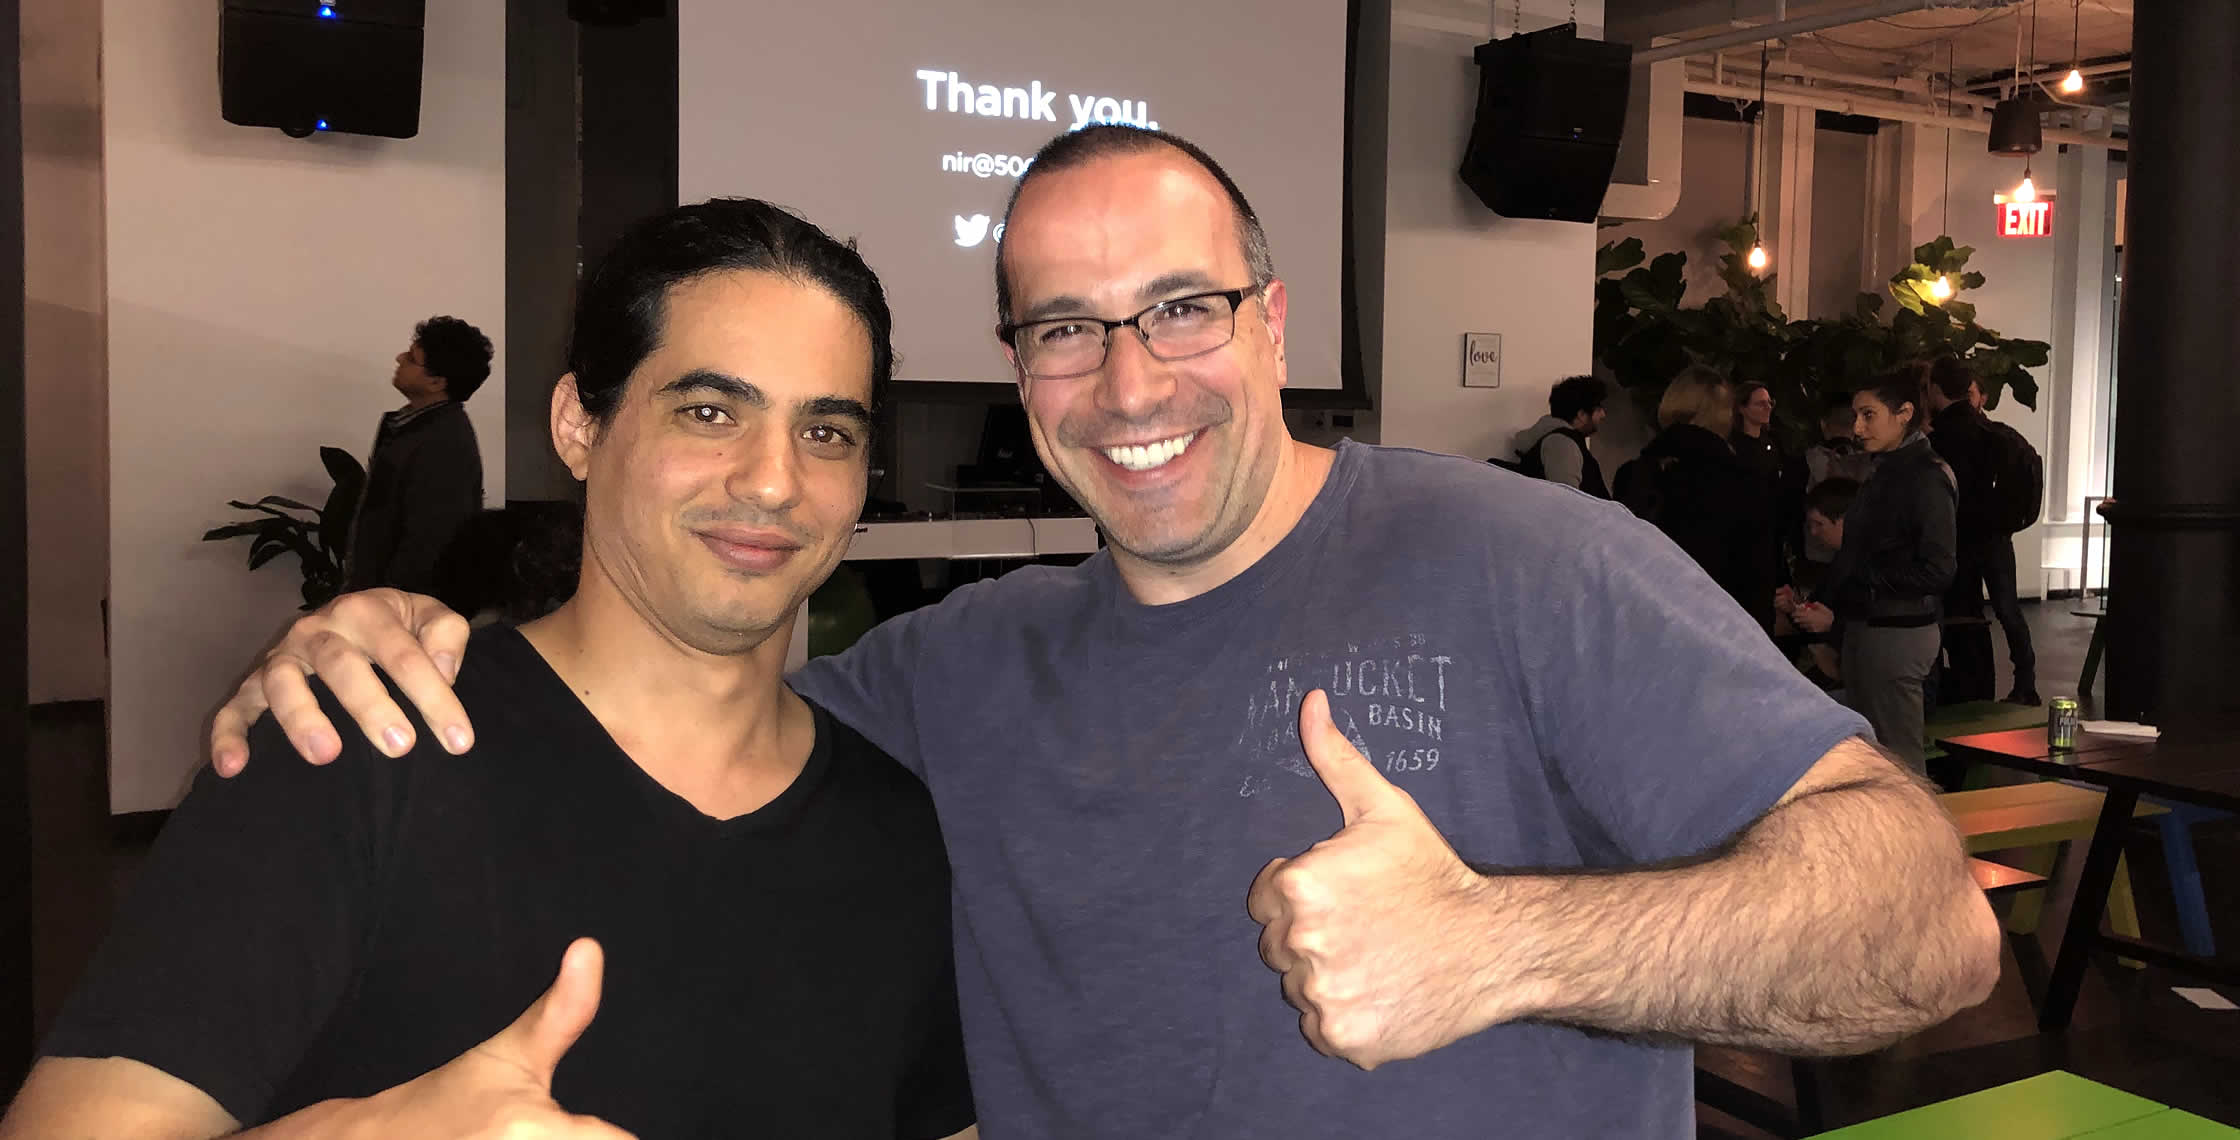 Ben Nadel at the React NYC Meetup (Oct. 2018) with: Nir Kaufman